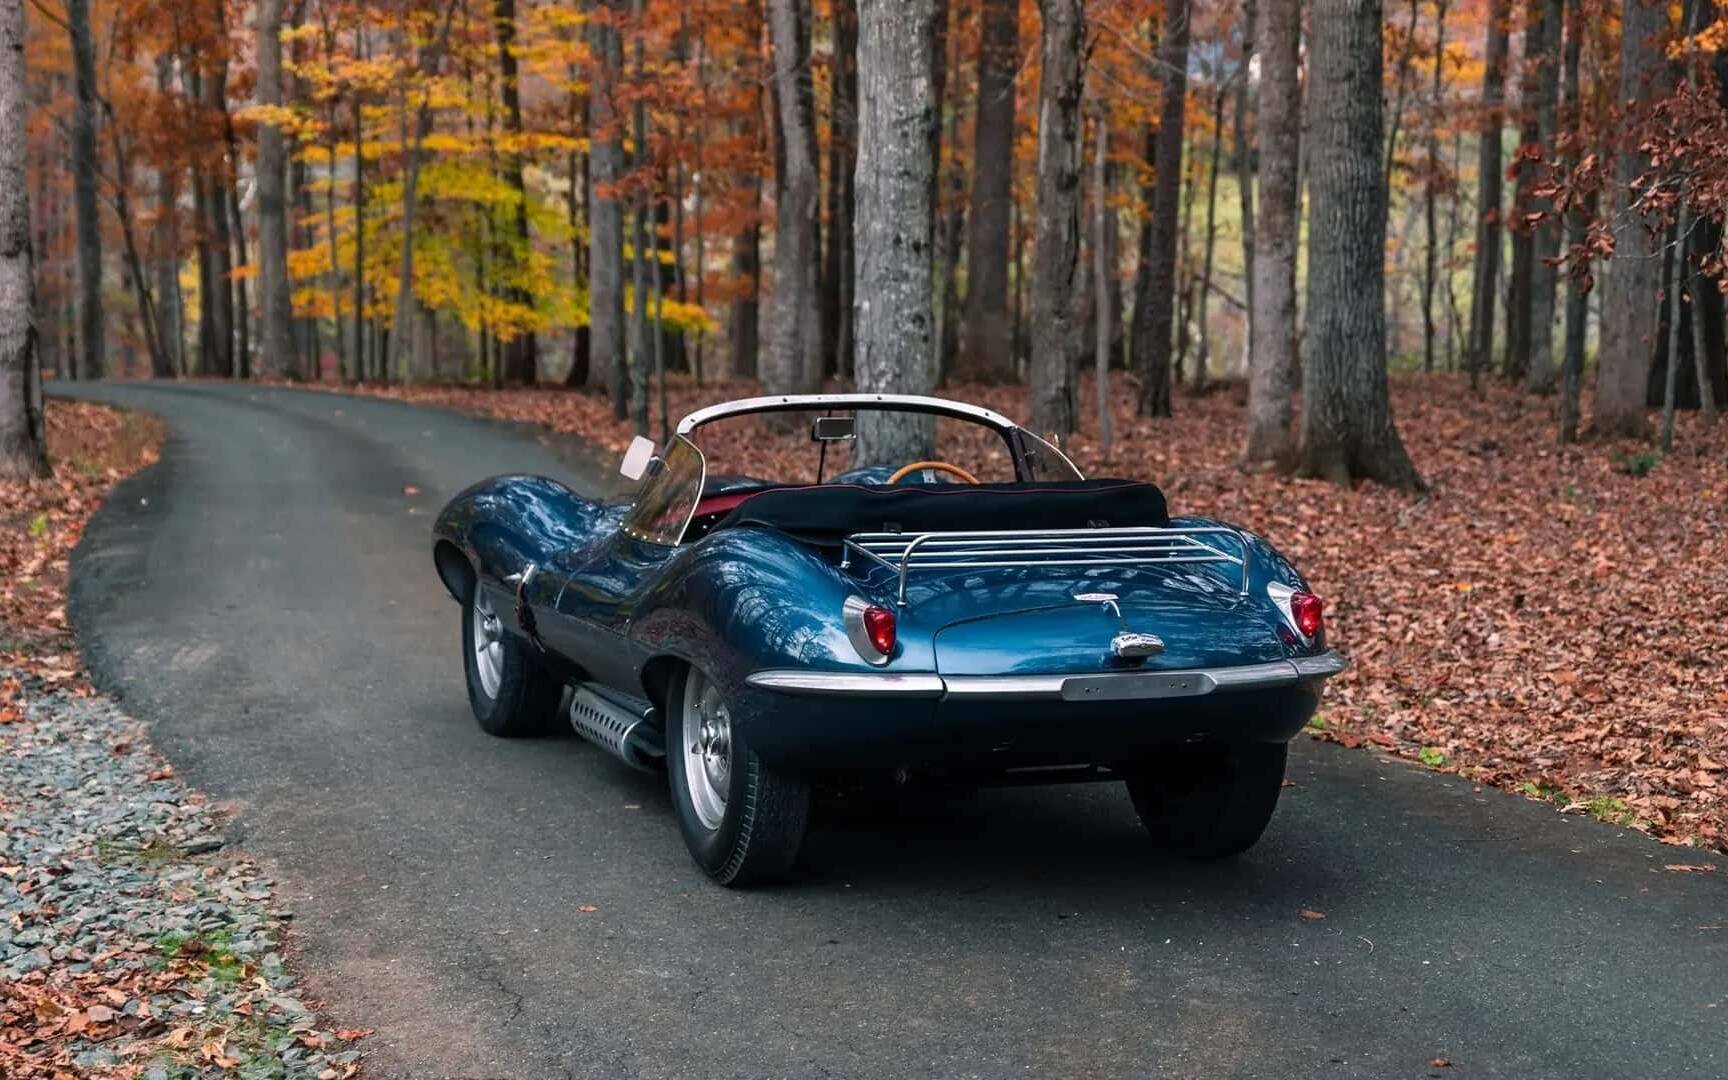 vendre - Cette Jaguar XKSS 1957 pourrait se vendre pour plus de 18 M$ 581470-cette-jaguar-xkss-1957-pourrait-se-vendre-pour-18-m